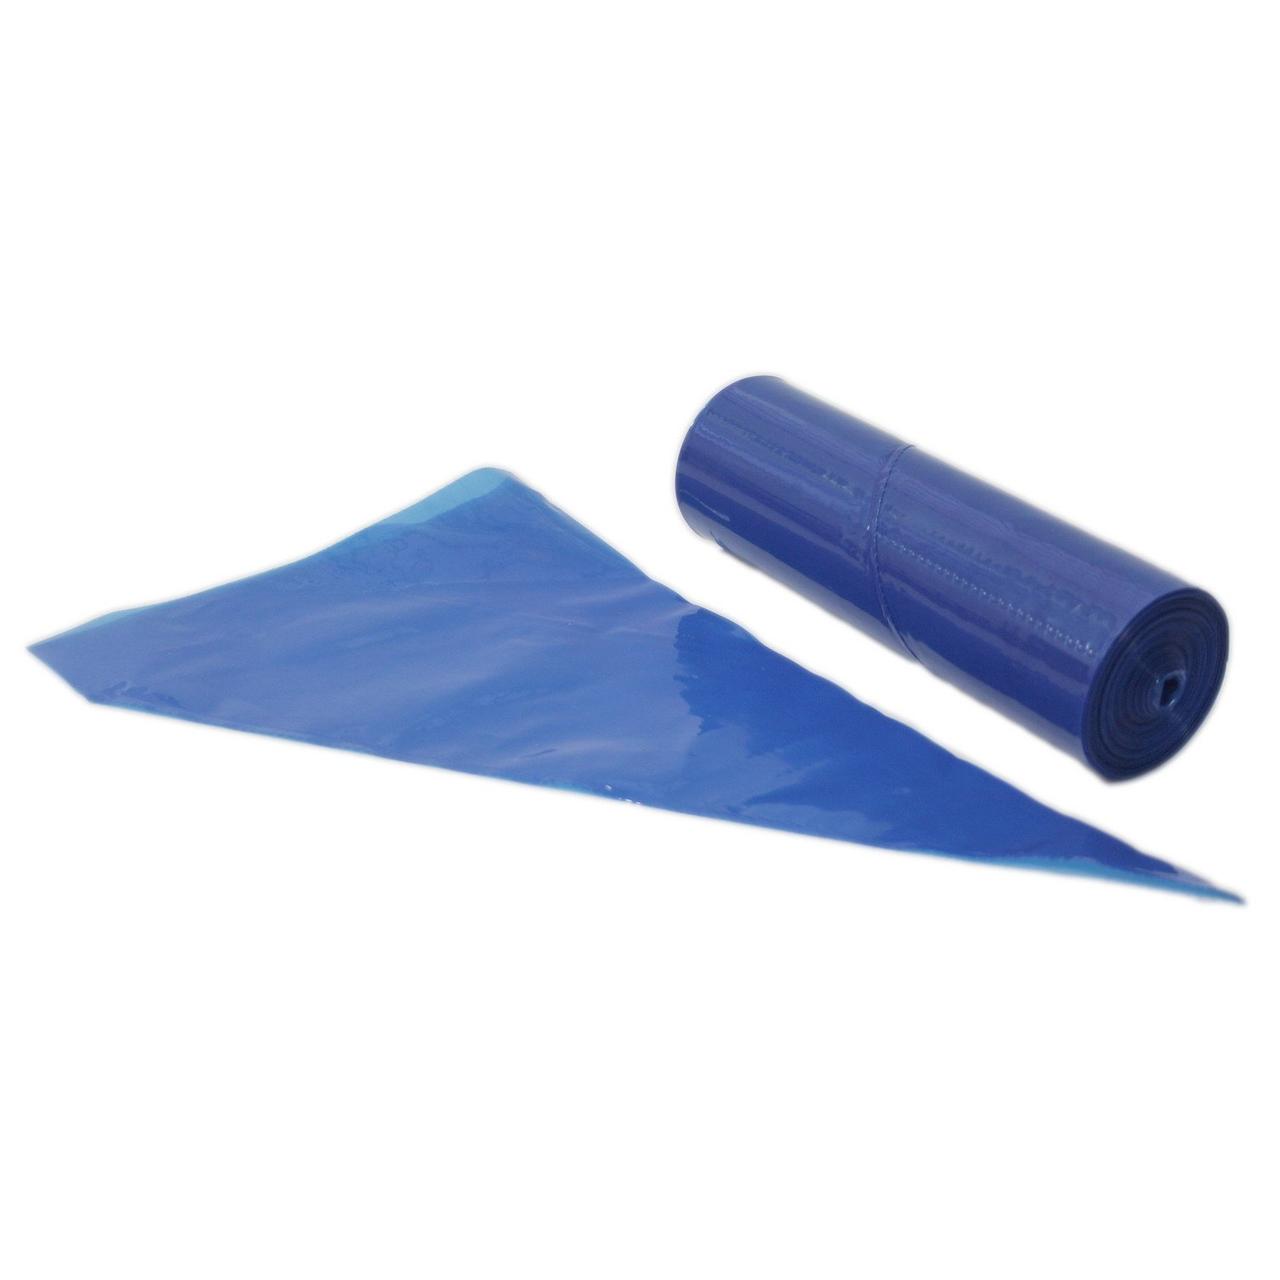 Мешок кондитерский в ролике LDPE, трехслойный, синий, с микрорельефом наружной поверхн. 53 см, 100 шт